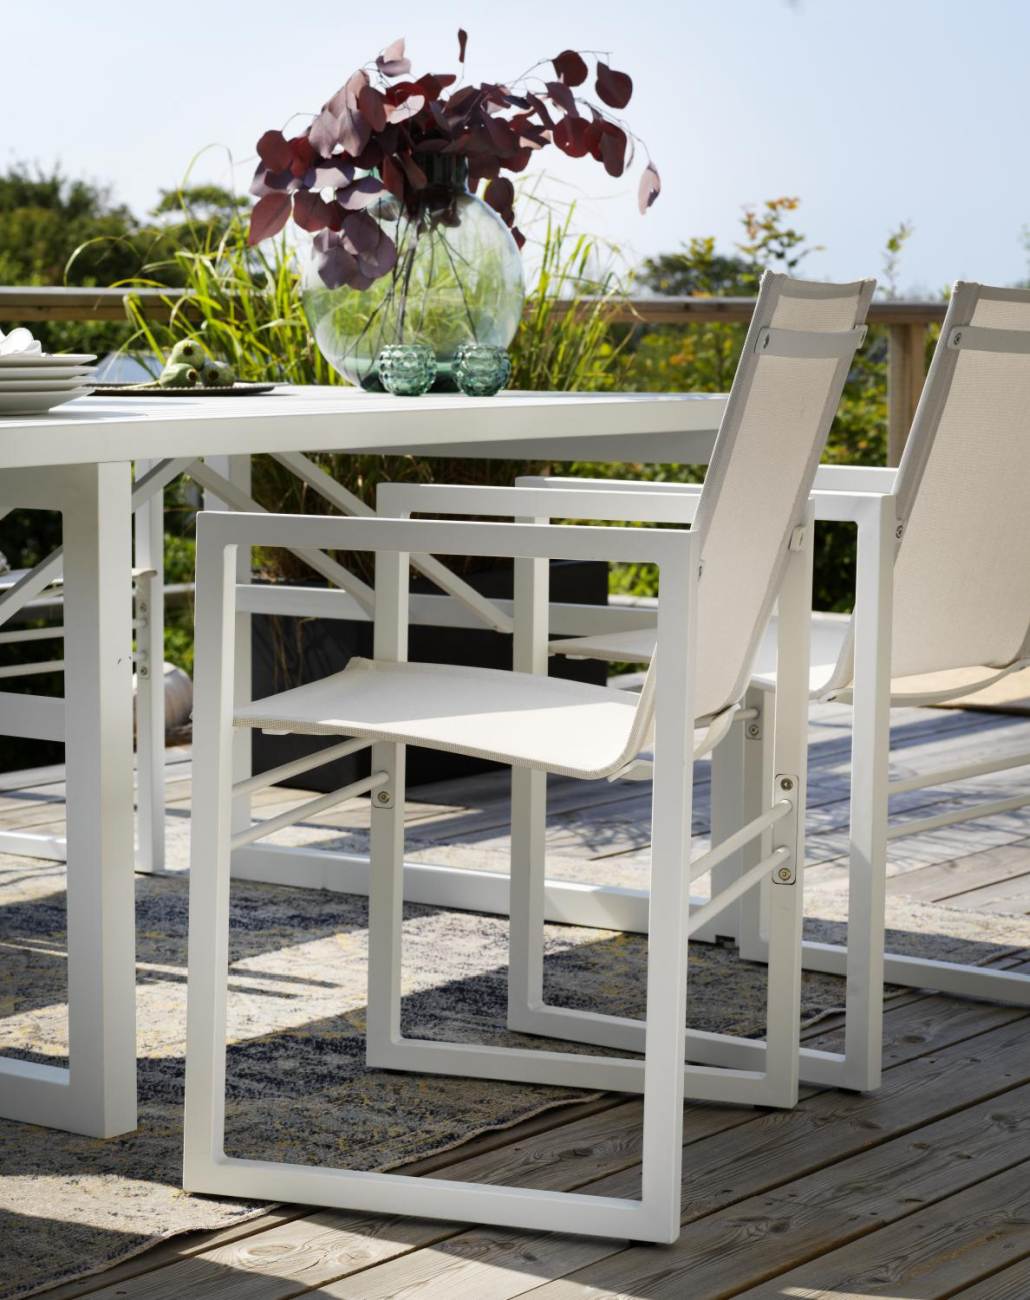 Der Gartenesstisch Vevi überzeugt mit seinem modernen Design. Gefertigt wurde die Tischplatte aus Metall, welche einen weißen Farbton besitzt. Das Gestell ist auch aus Metall und hat eine weiße Farbe. Der Tisch besitzt eine Länge von 160 cm.